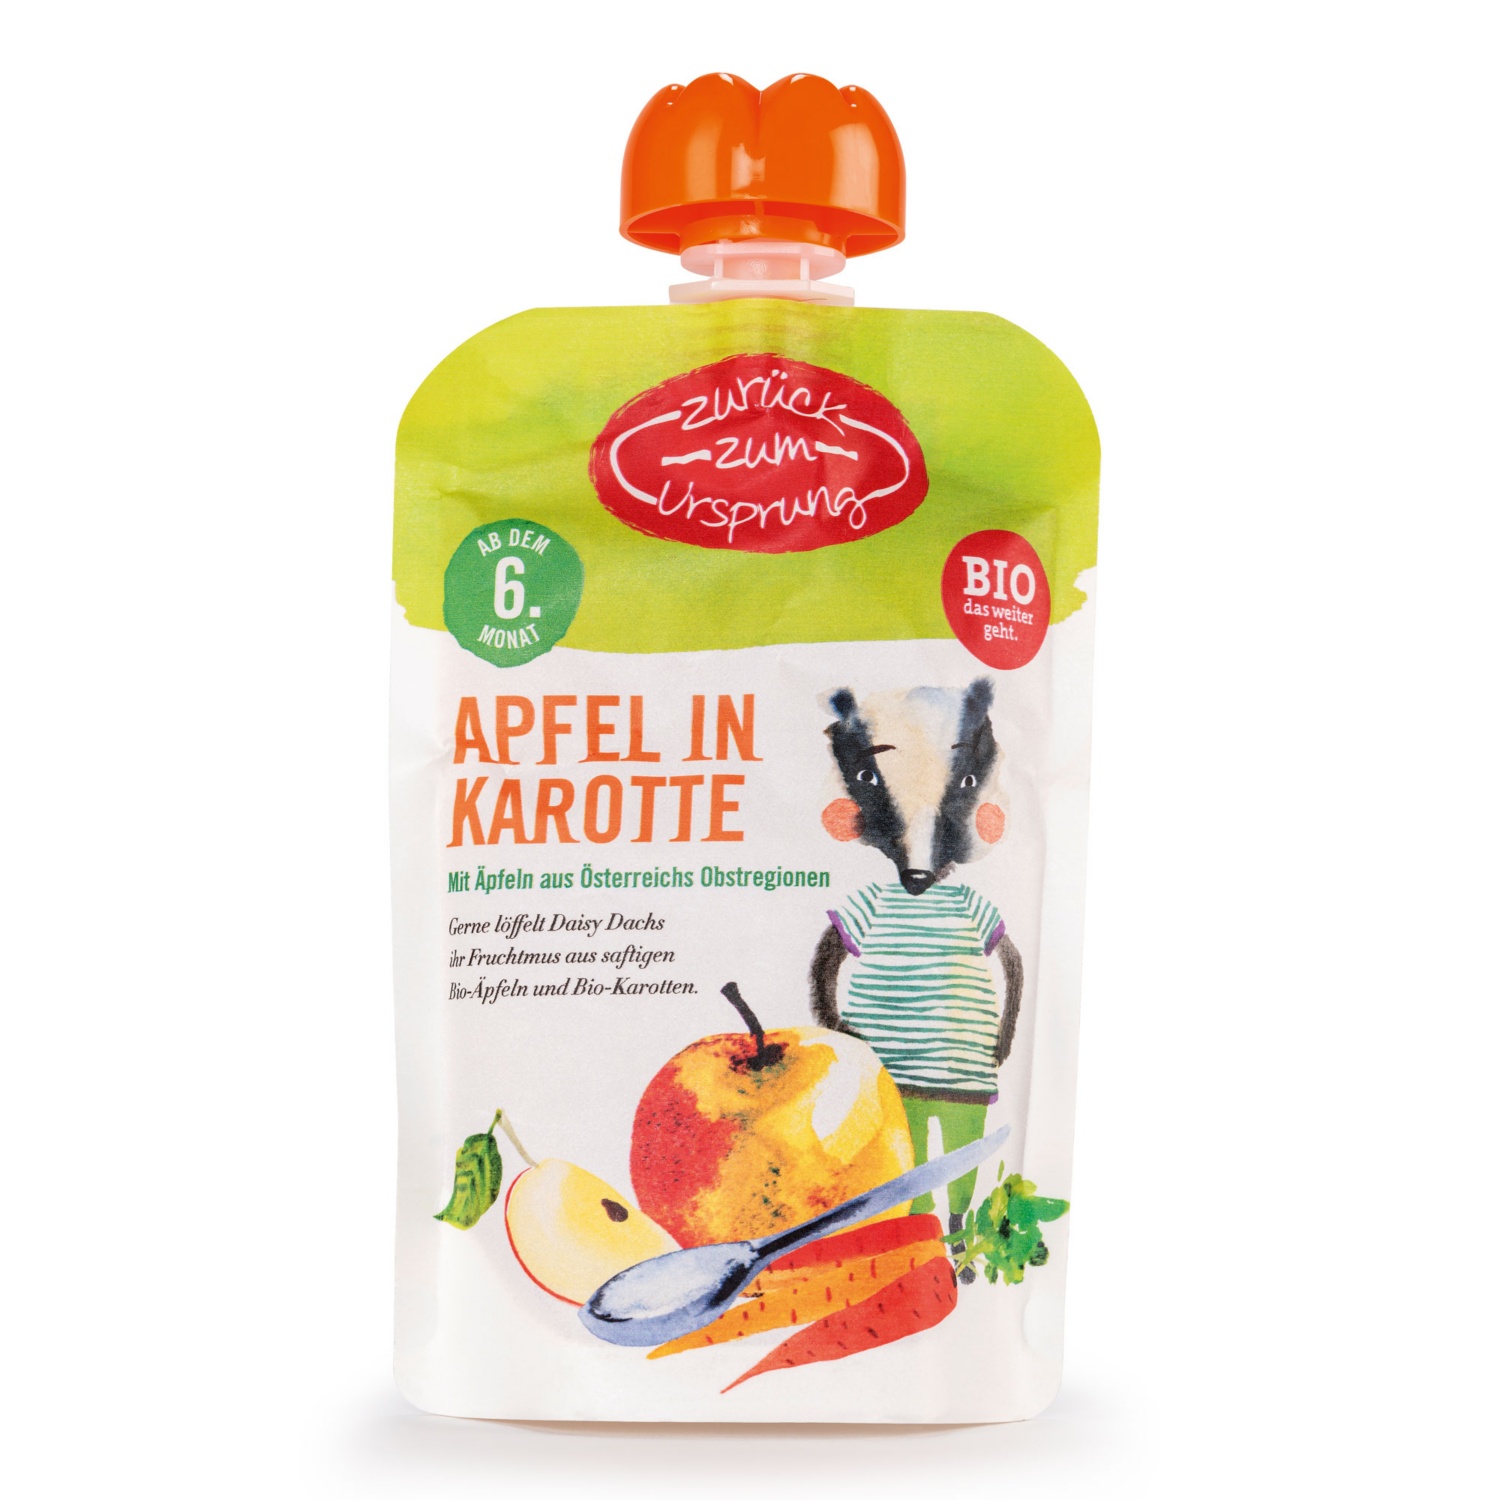 ZURÜCK ZUM URSPRUNG BIO-Fruchtsnack Apfel Karotte